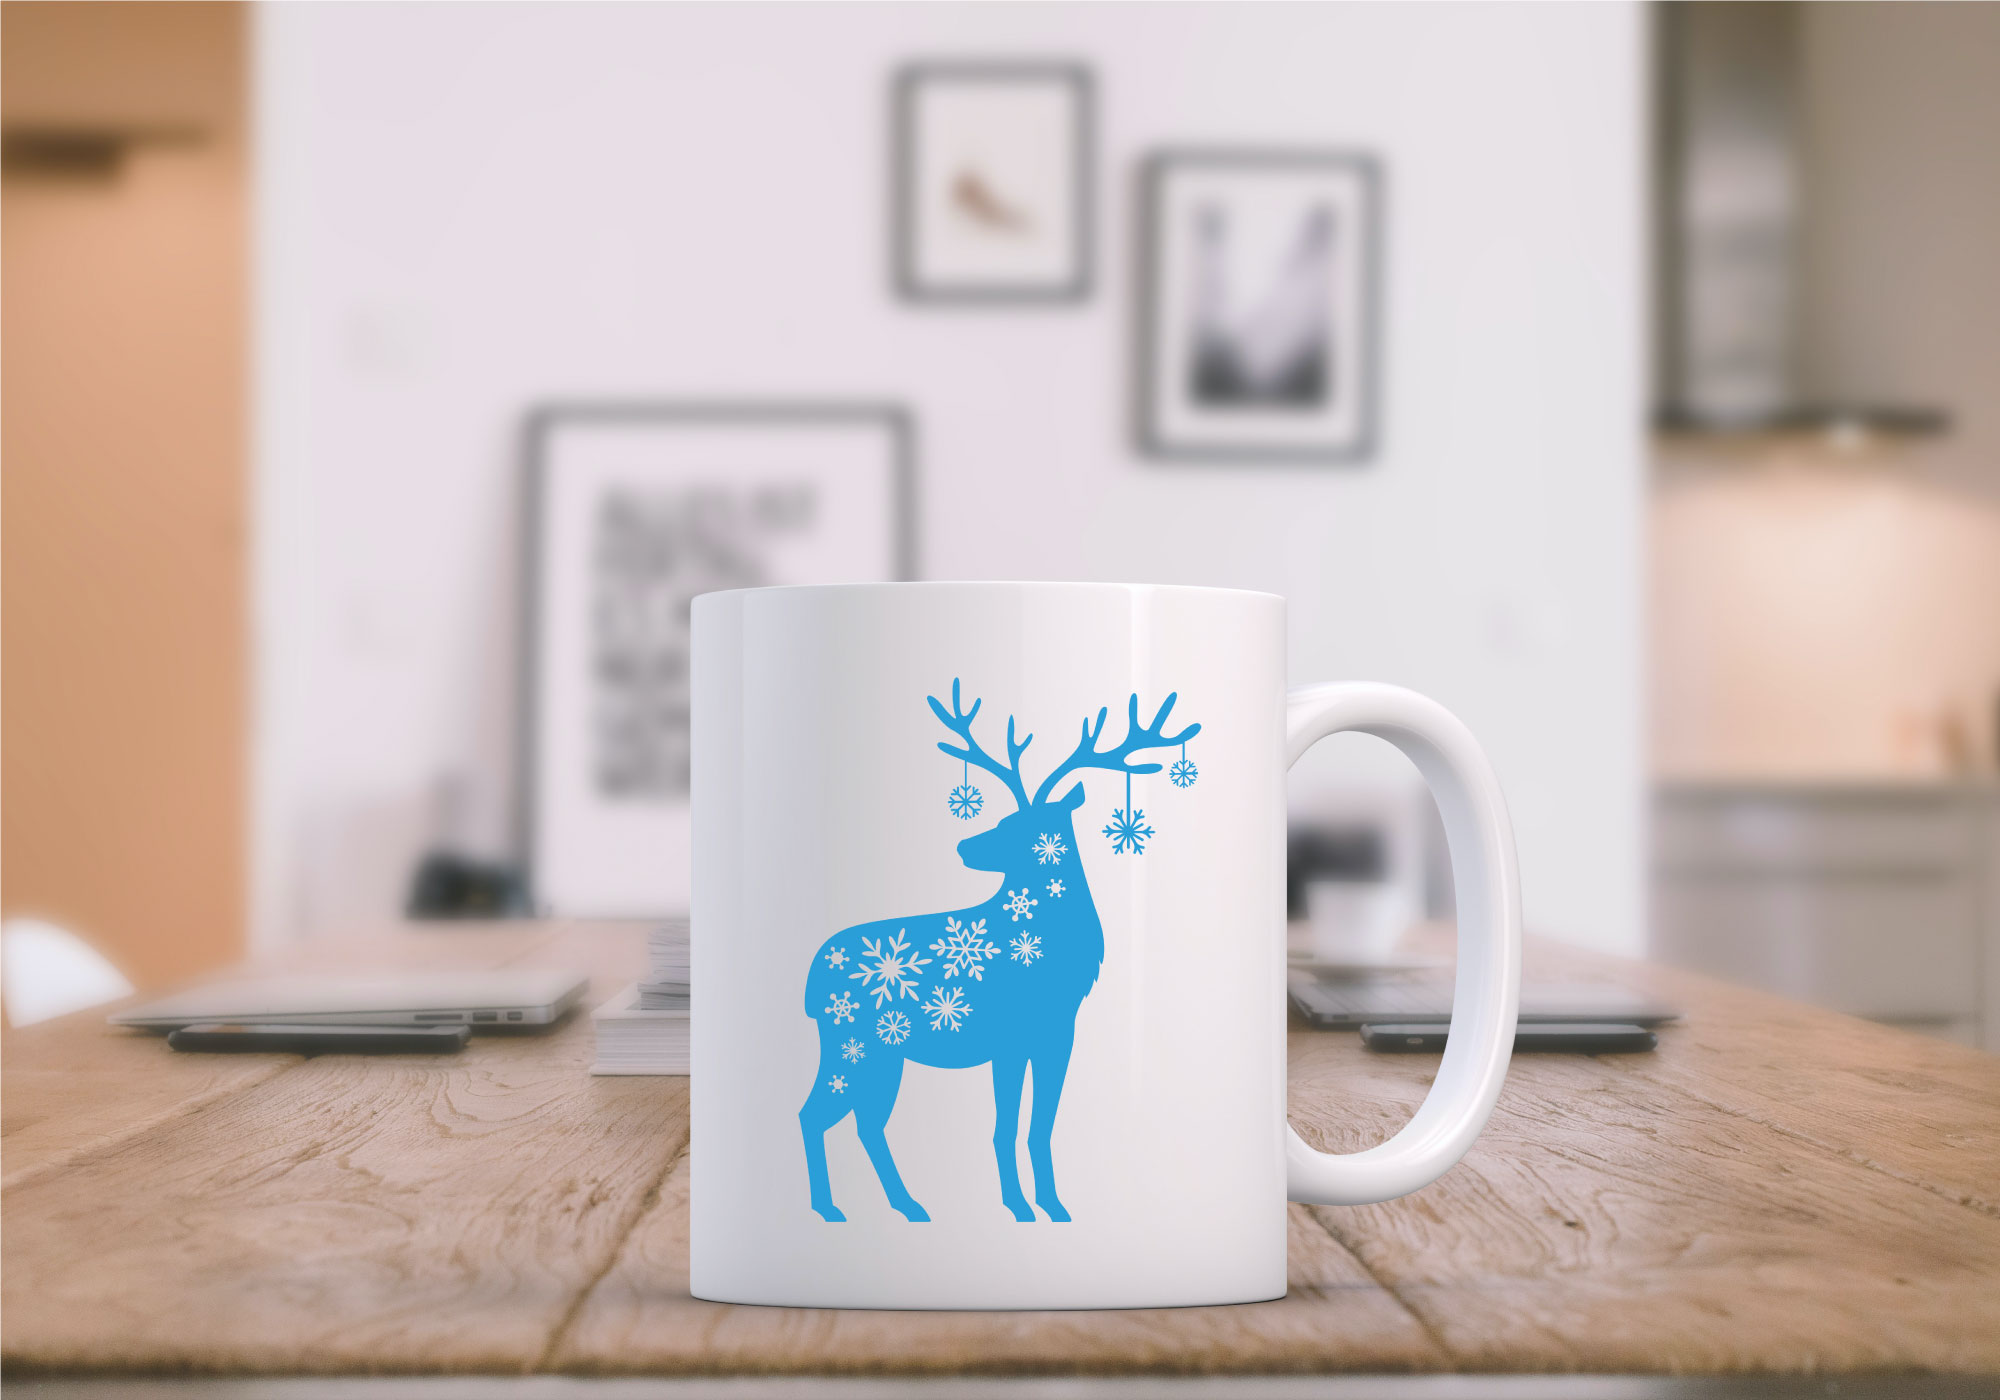 Free Snow Flake Reindeer SVG